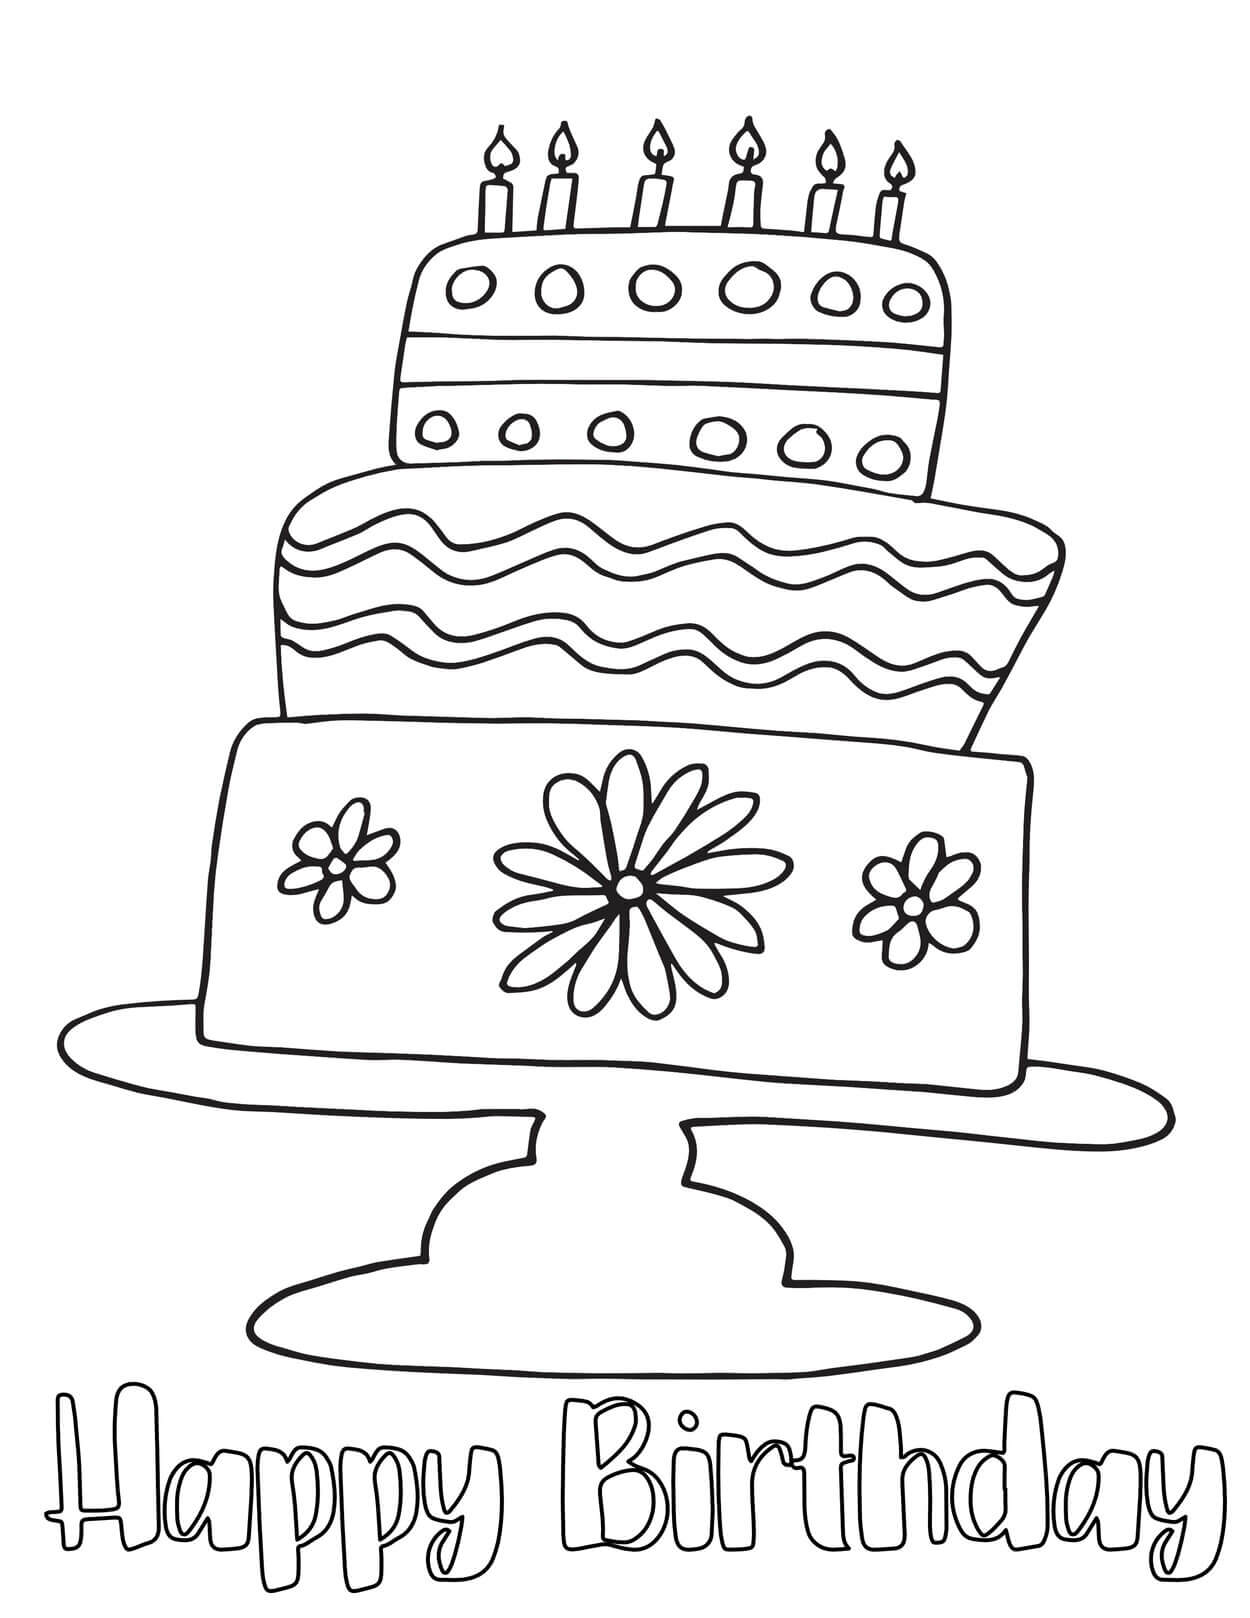 Kolorowanka Rysowanie tortu Urodzinowego z Okazji Urodzin